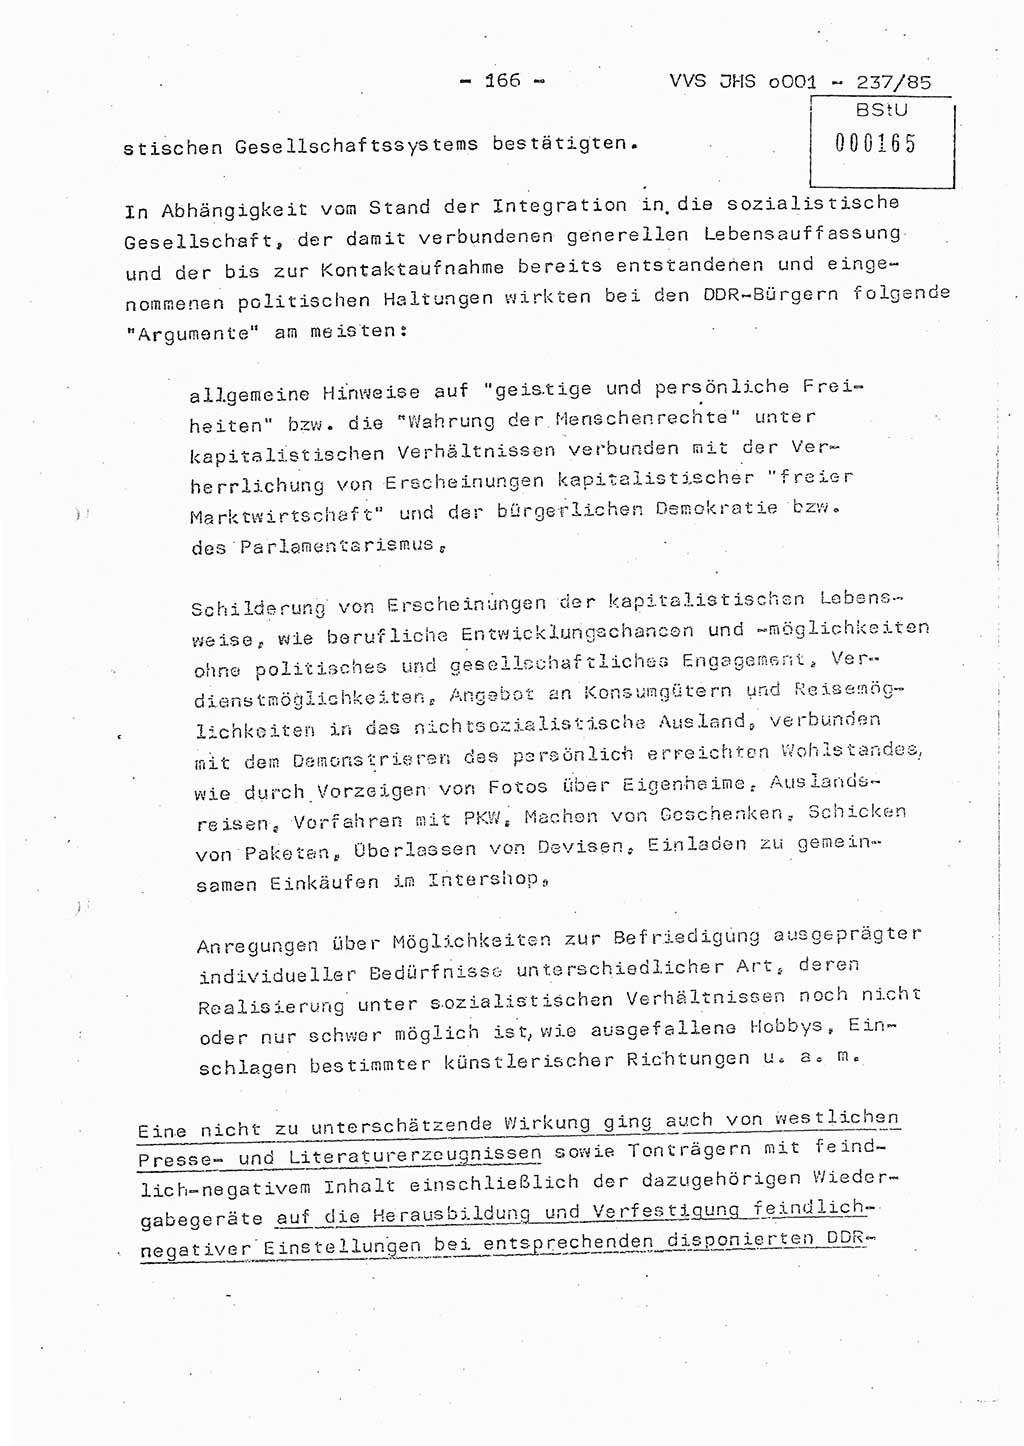 Dissertation Oberstleutnant Peter Jakulski (JHS), Oberstleutnat Christian Rudolph (HA Ⅸ), Major Horst Böttger (ZMD), Major Wolfgang Grüneberg (JHS), Major Albert Meutsch (JHS), Ministerium für Staatssicherheit (MfS) [Deutsche Demokratische Republik (DDR)], Juristische Hochschule (JHS), Vertrauliche Verschlußsache (VVS) o001-237/85, Potsdam 1985, Seite 166 (Diss. MfS DDR JHS VVS o001-237/85 1985, S. 166)